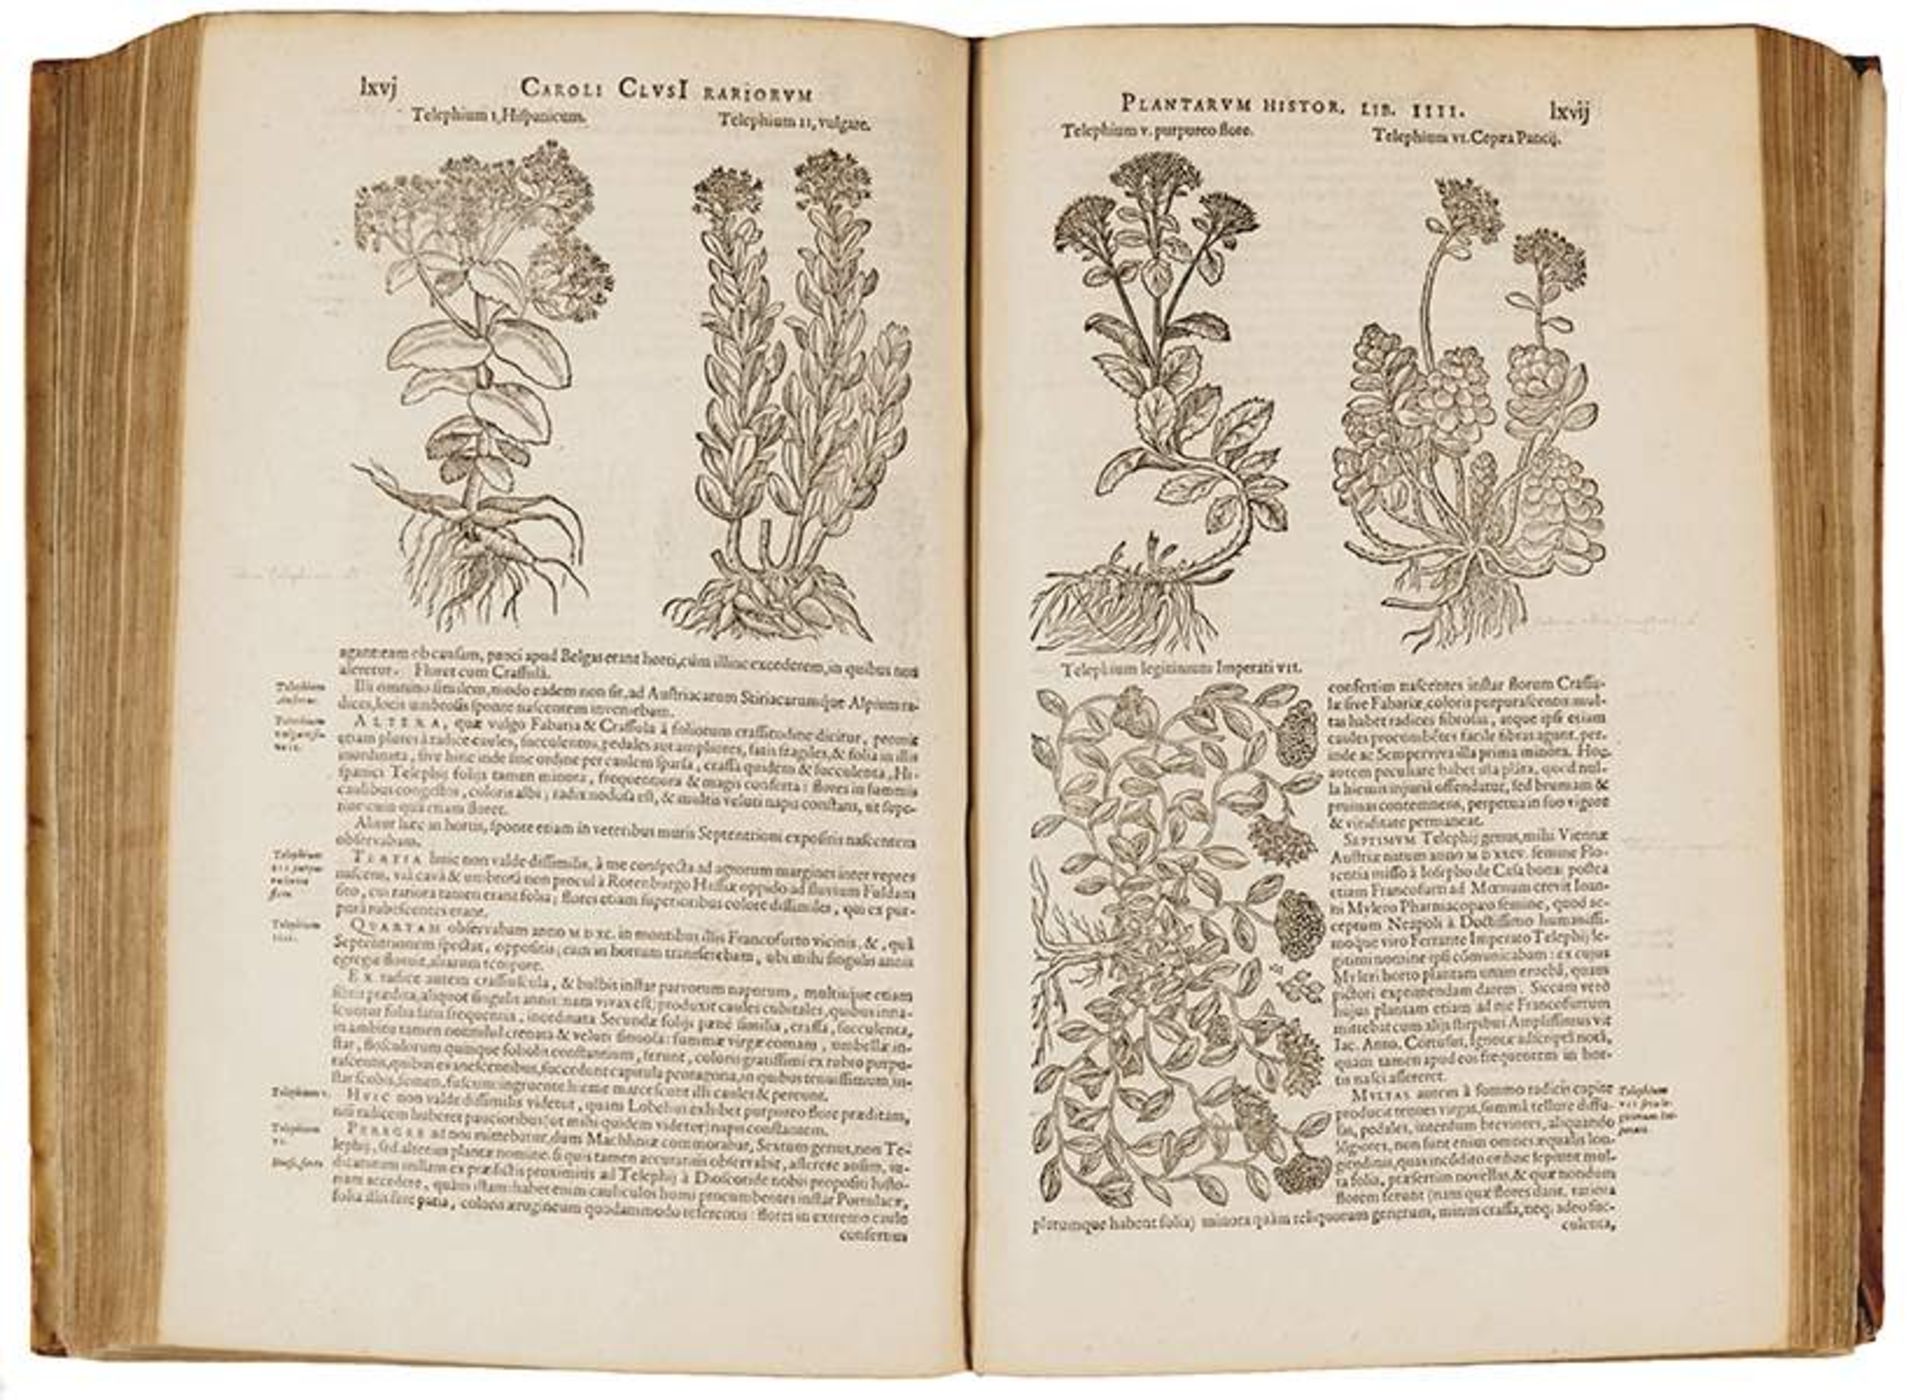 Biologie - Botanik - - Clusius, Carolus (das ist: Charles de L'Ecluse). Rariorum plantarum historia. - Image 3 of 3